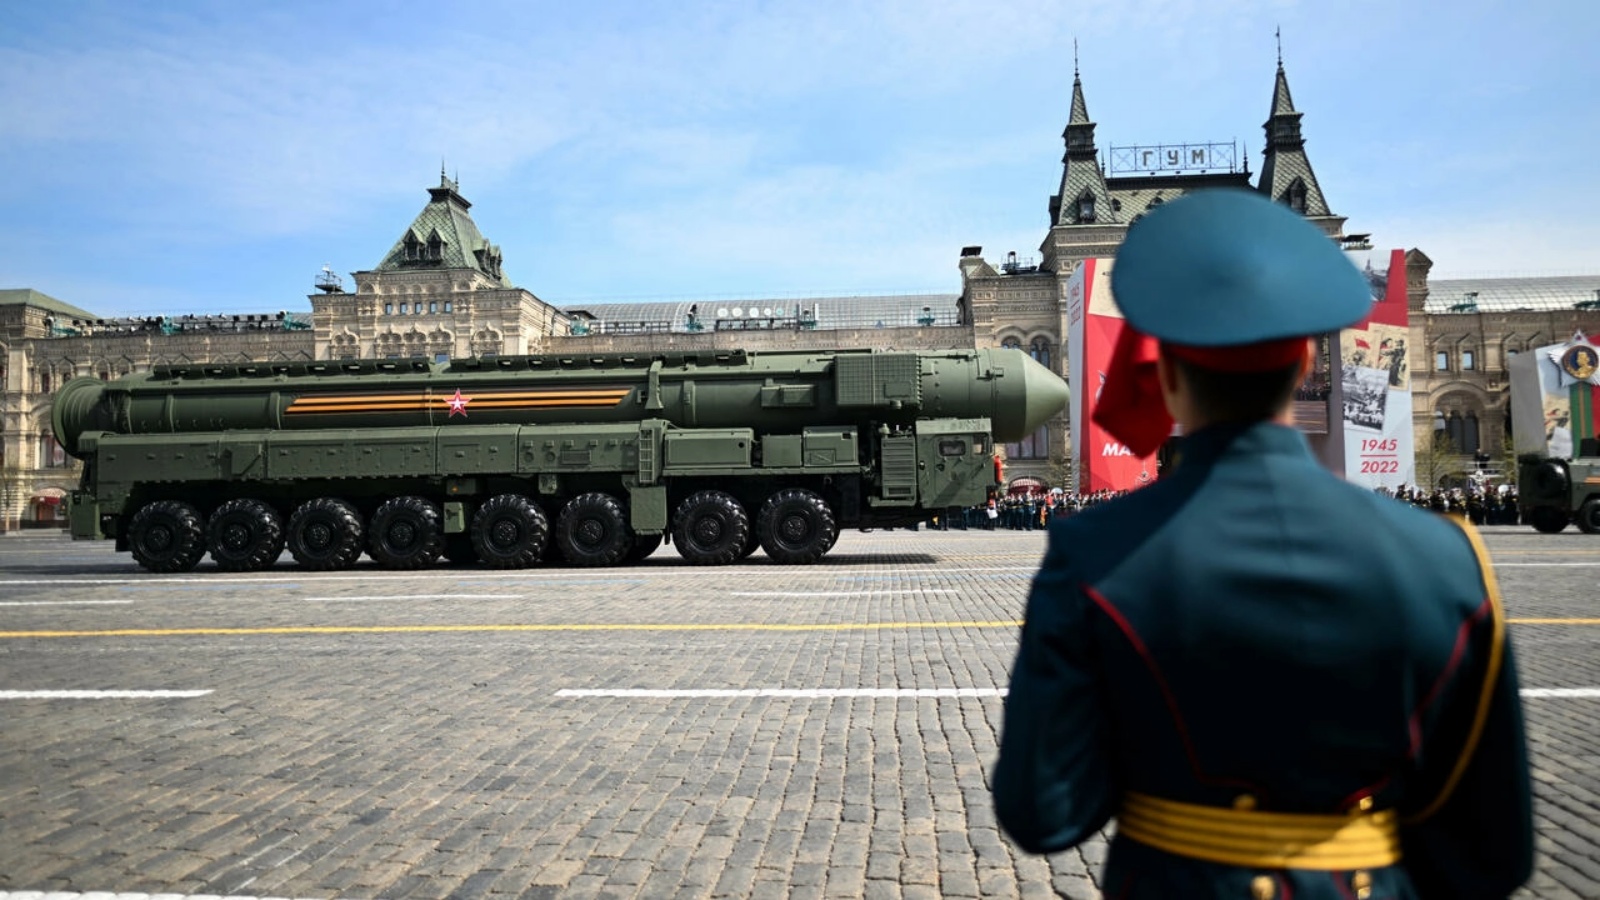 قاذفة صواريخ بالستية روسية في الساحة الحمراء خلال تمارين على العرض العسكري في موسكو، في السابع من مايو 2022 